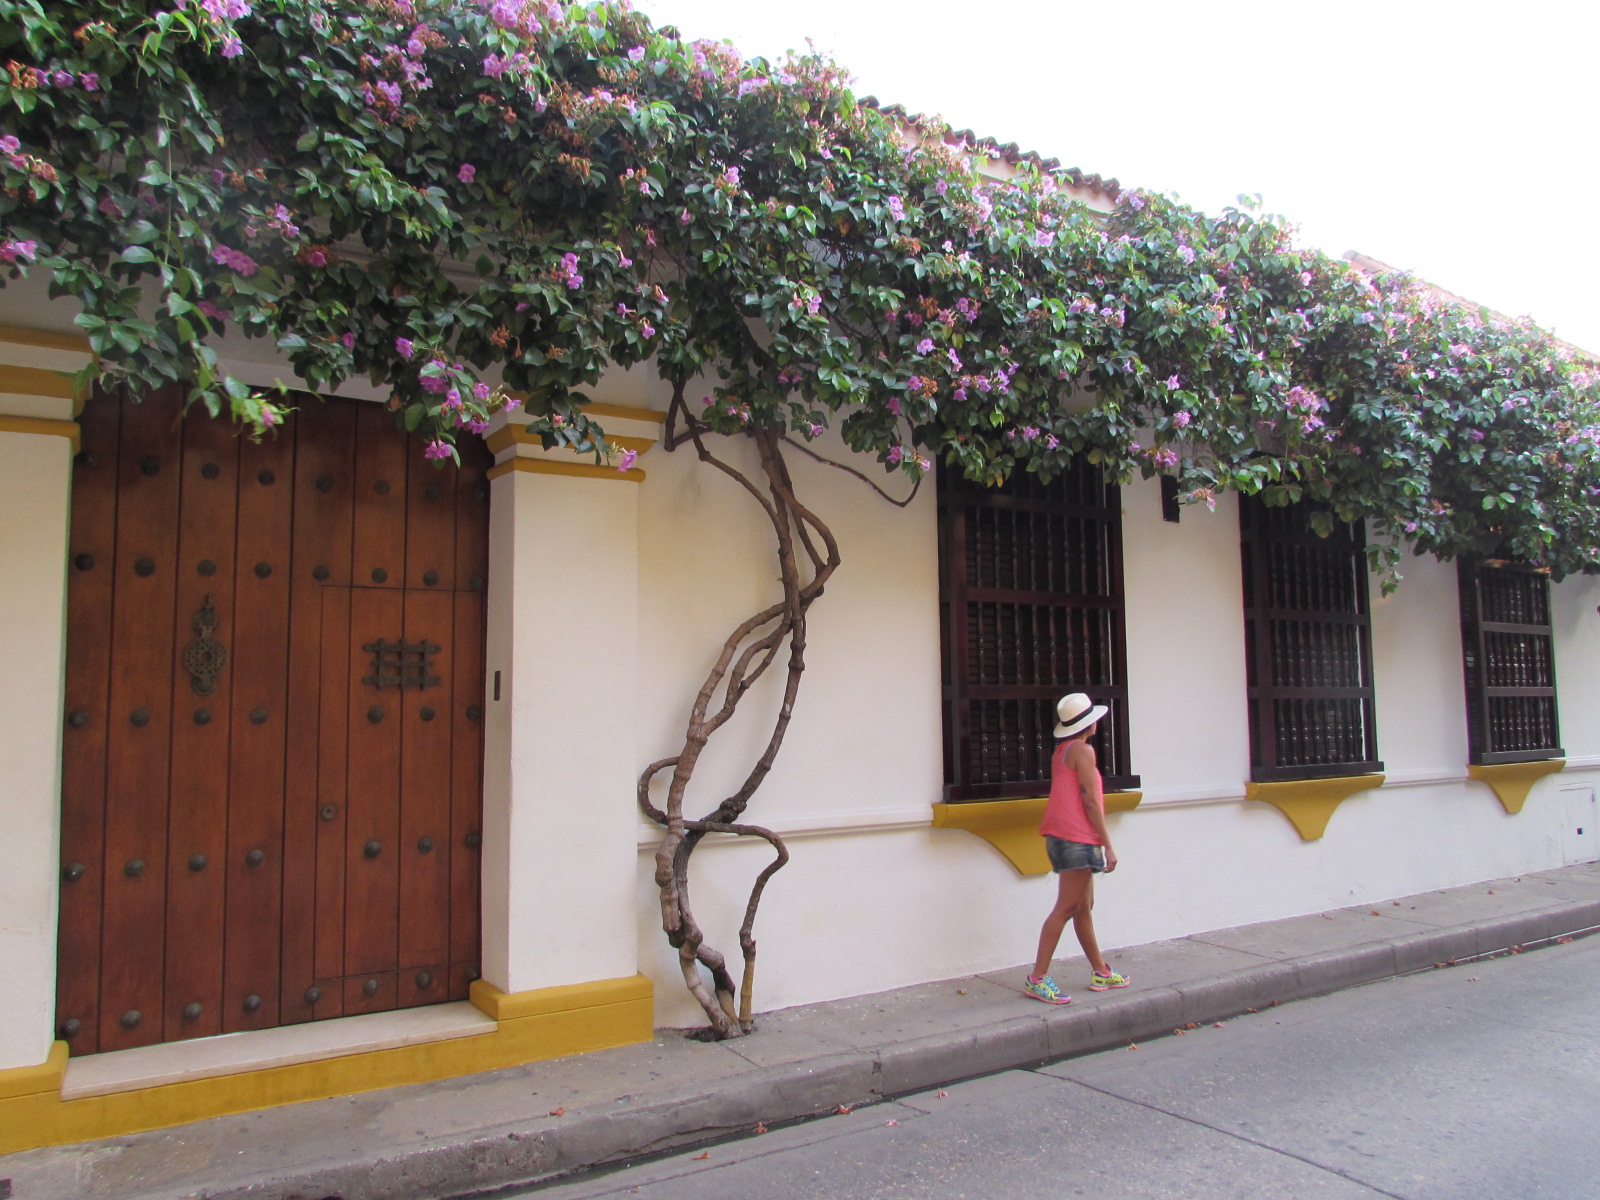 Quanto custa uma viagem para Cartagena